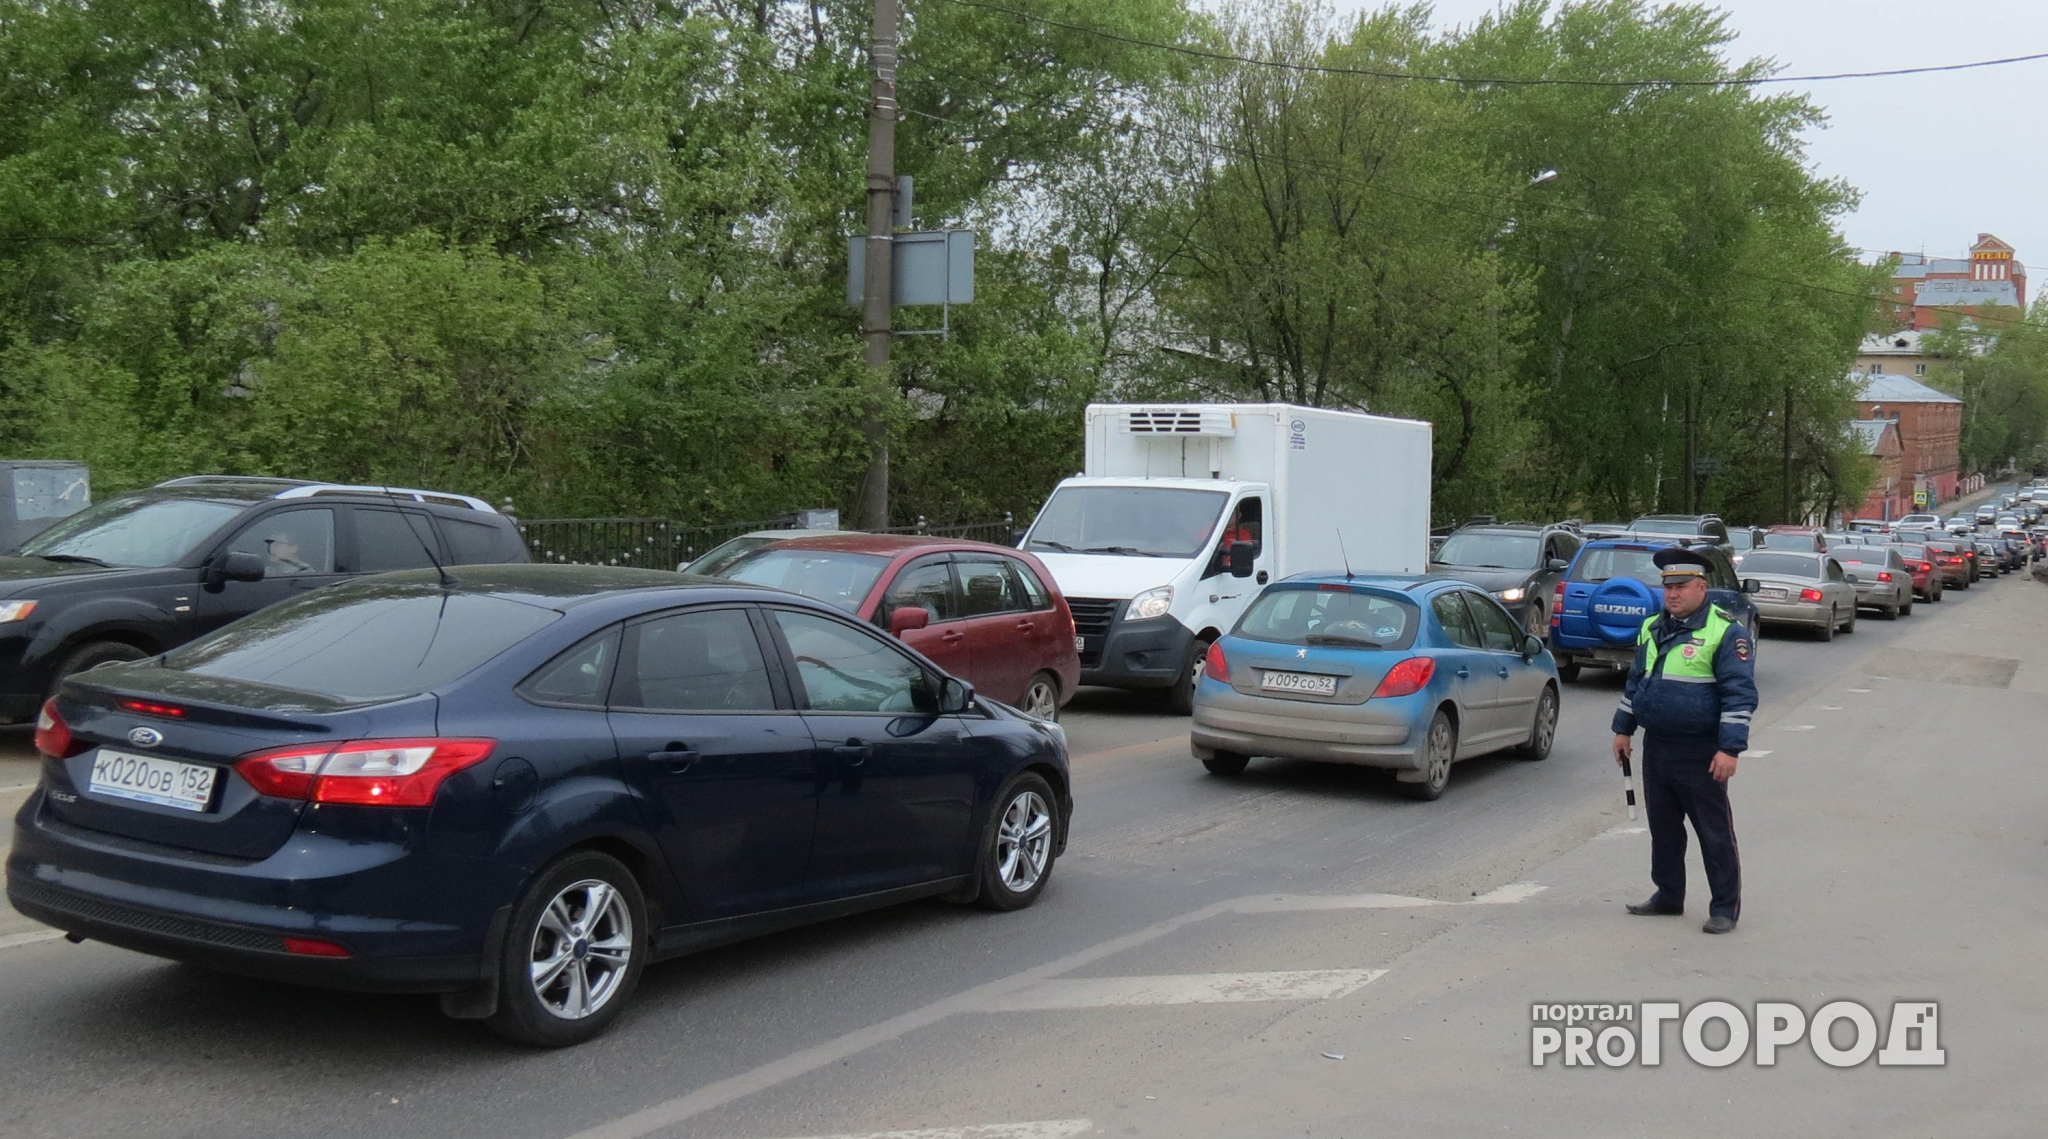 Нижегородские автовладельцы: "Светофор включили, теперь и площадь тормозит, и мост встал"